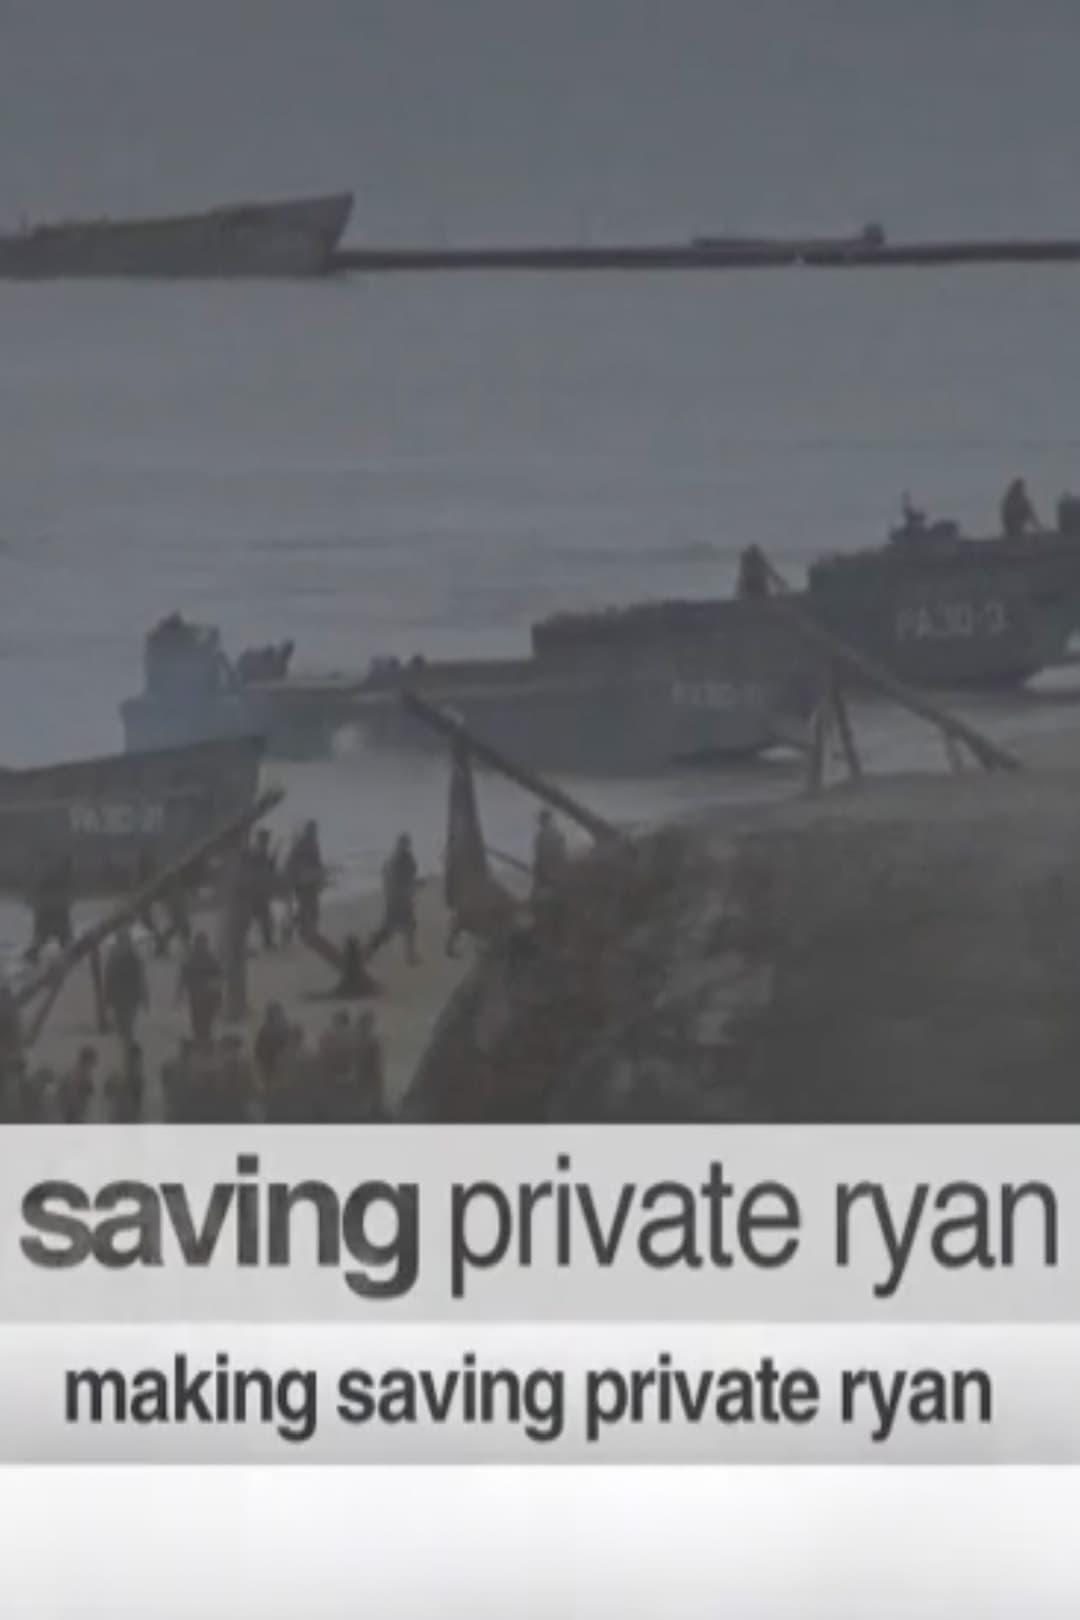 Making 'Saving Private Ryan' poster